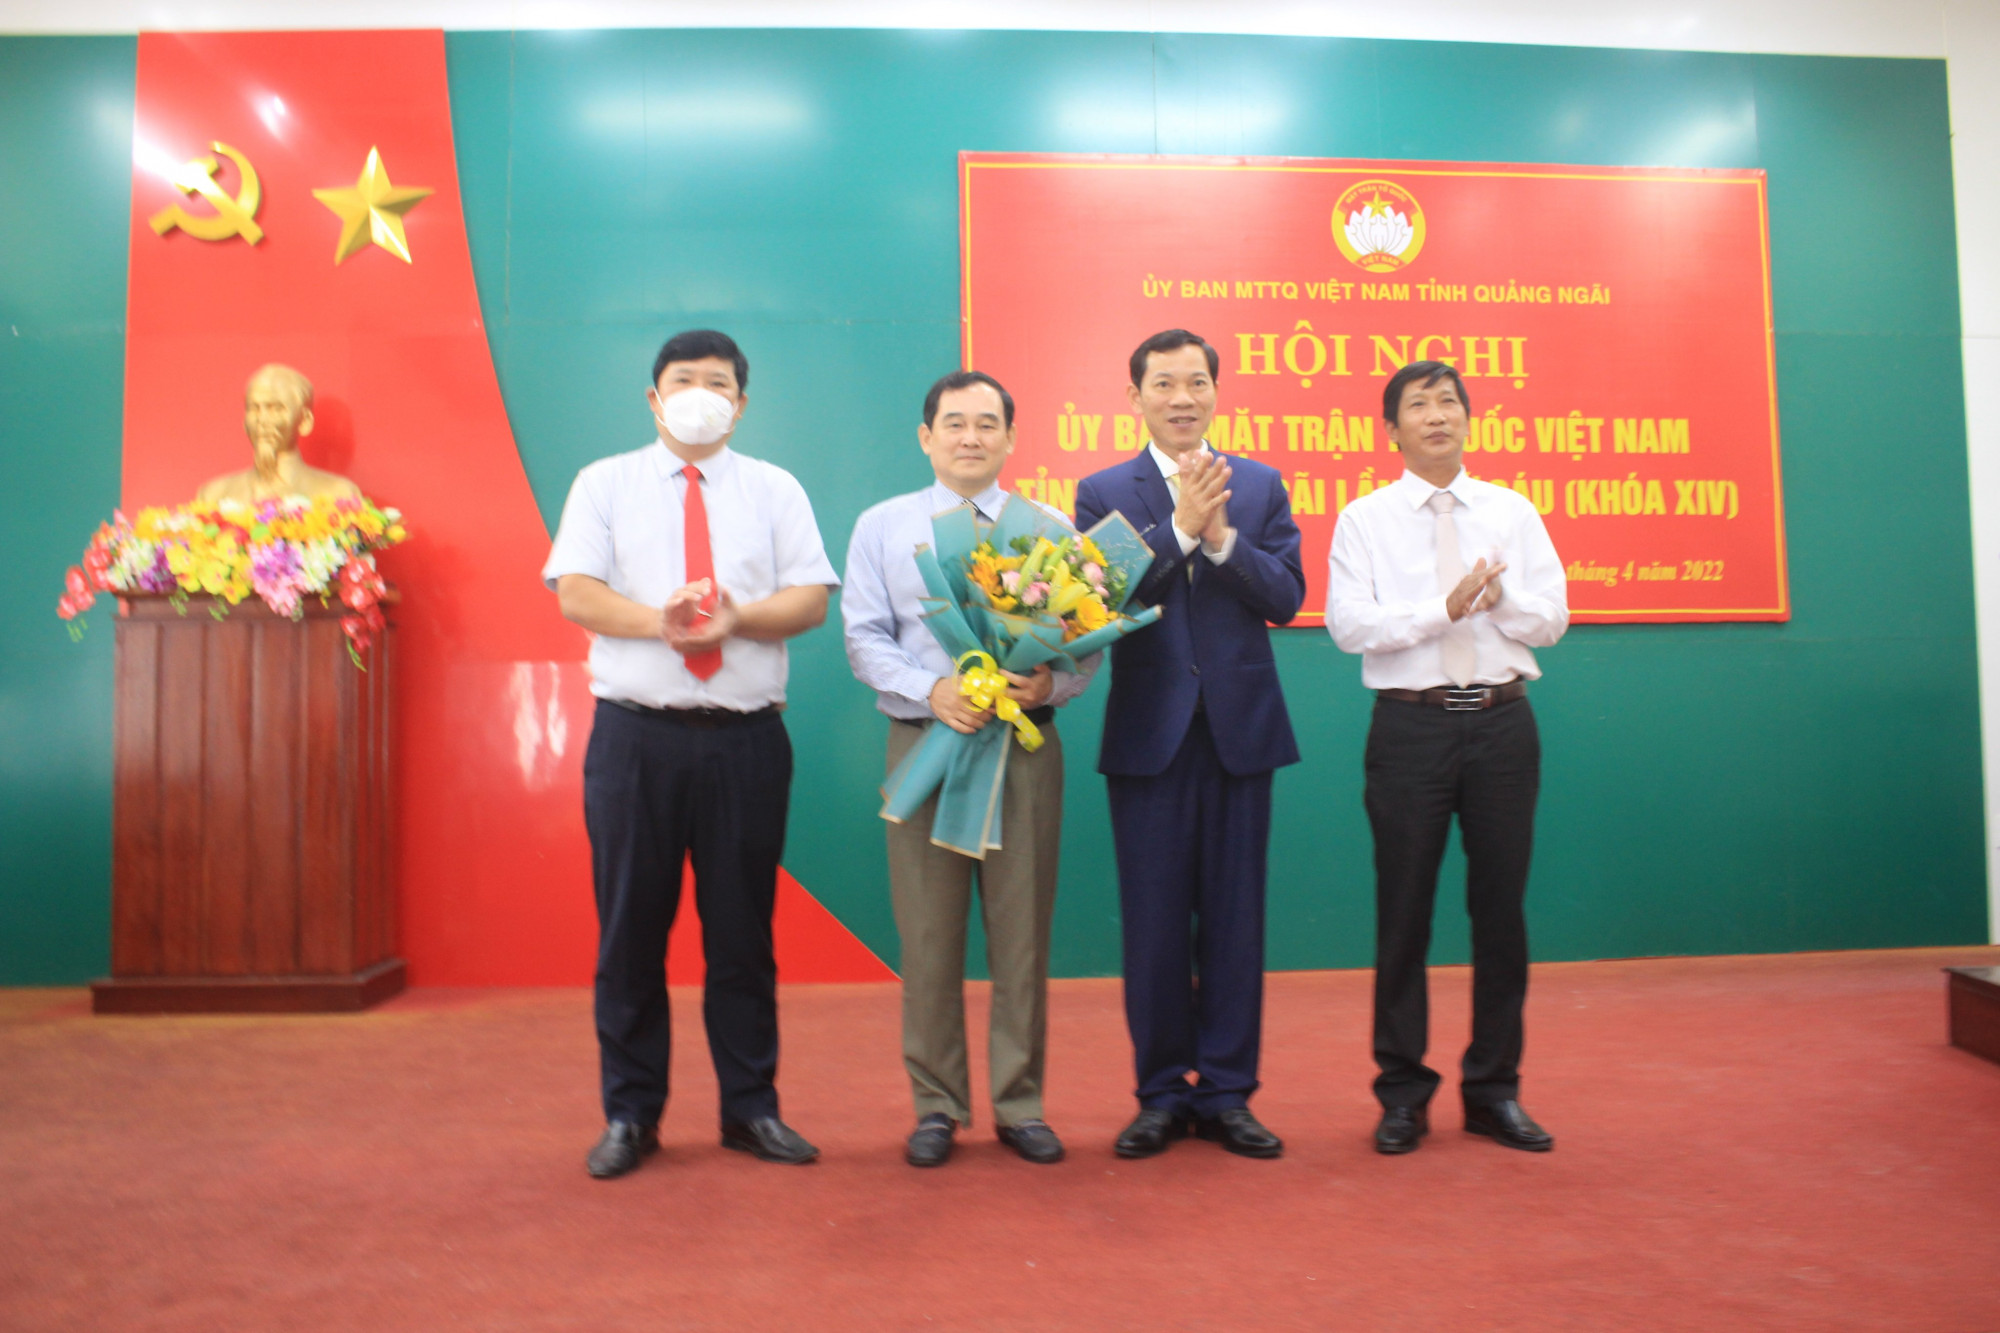 Ông Nguyễn Xuân Mến - người cầm hoa, nguyên giám đốc sở Y tế Quảng Ngãi bị xem xét kỷ luật